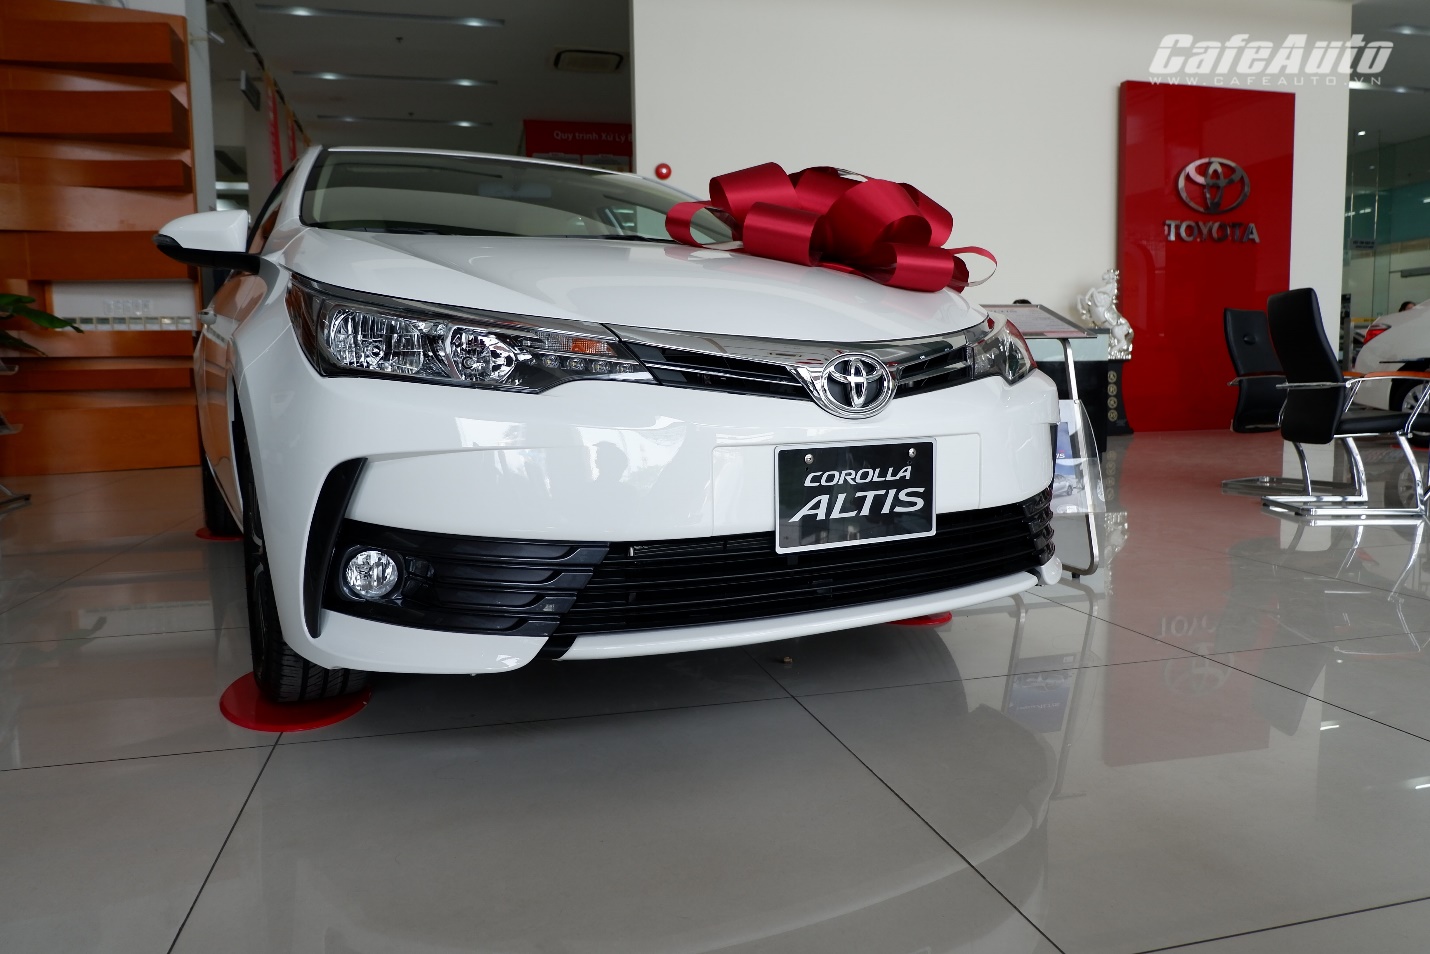 Toyota Corolla Altis phiên bản nâng cấp: bổ sung hệ thống Cruise Control, giá tăng nhẹ - ảnh 1